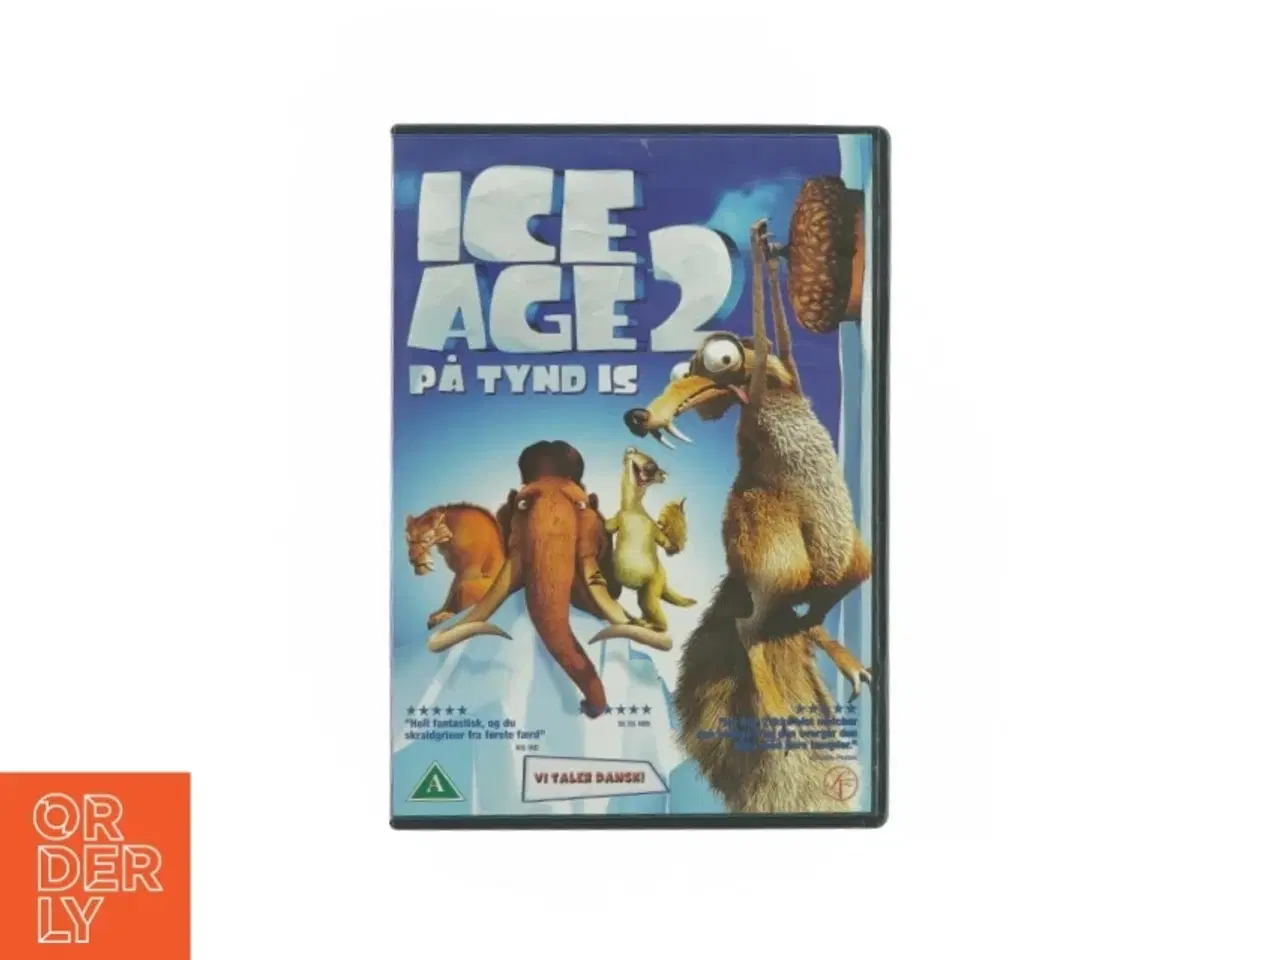 Billede 1 - Ica age 2 - på tynd is (DVD)